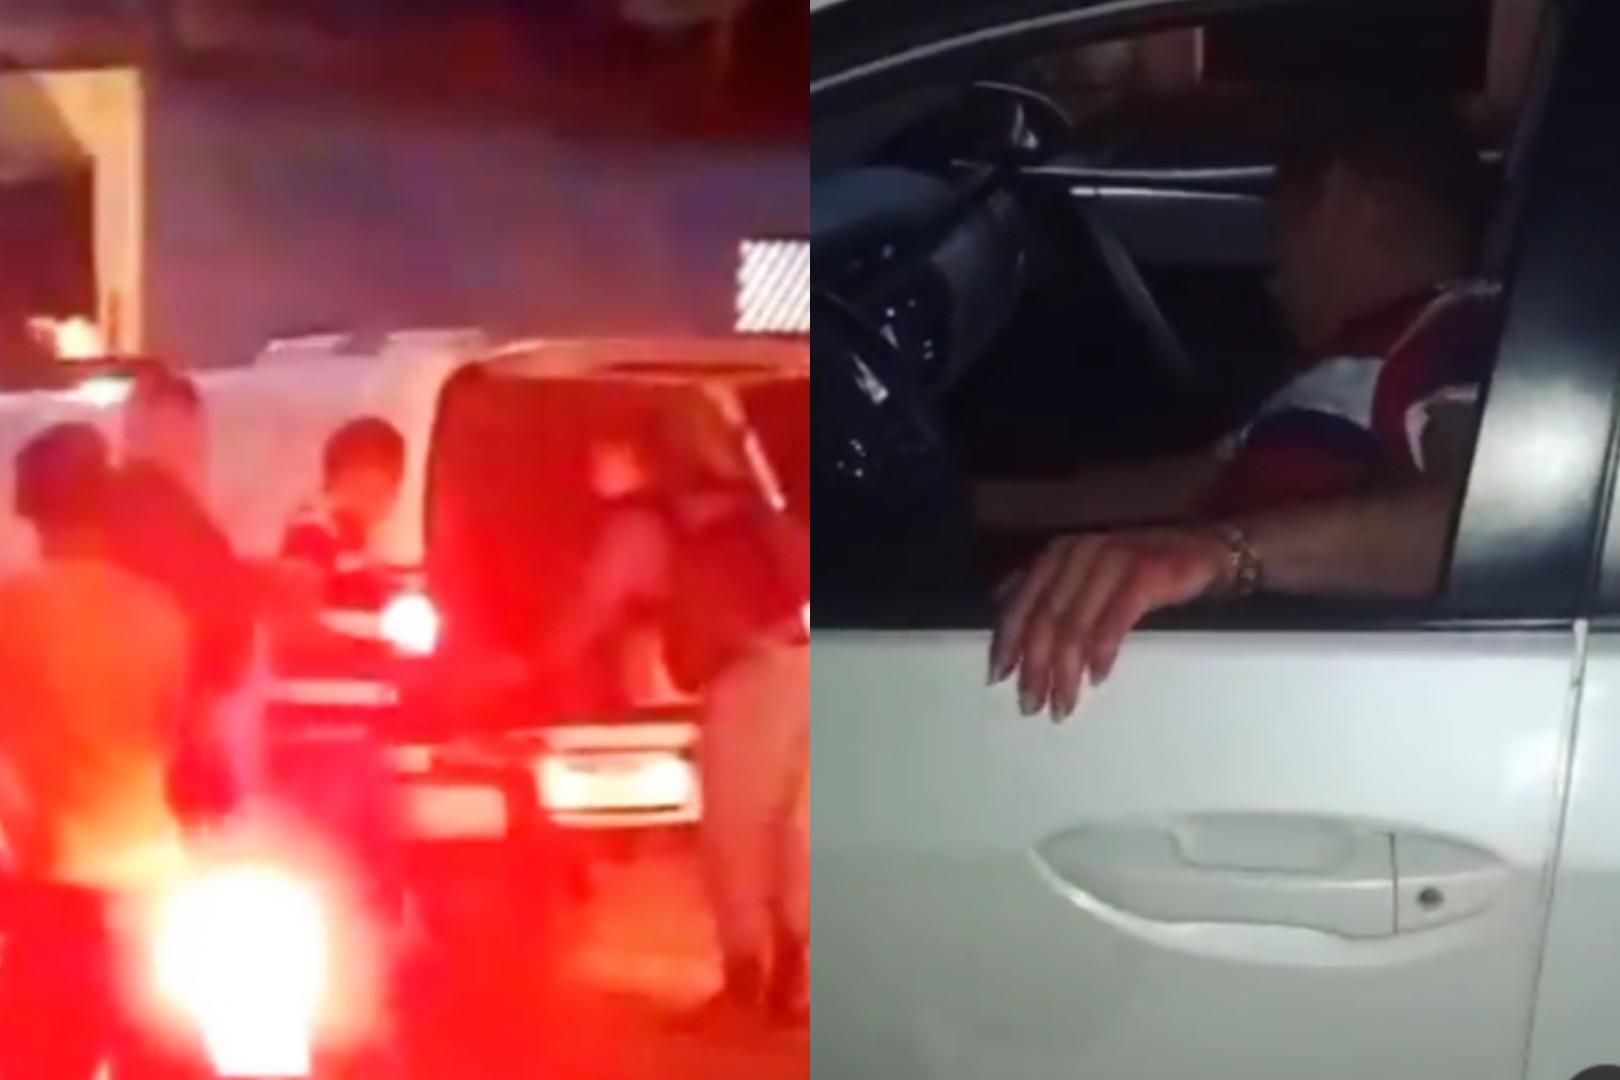 Imagens do cantor sendo conduzido pela polícia foram registradas por moradores